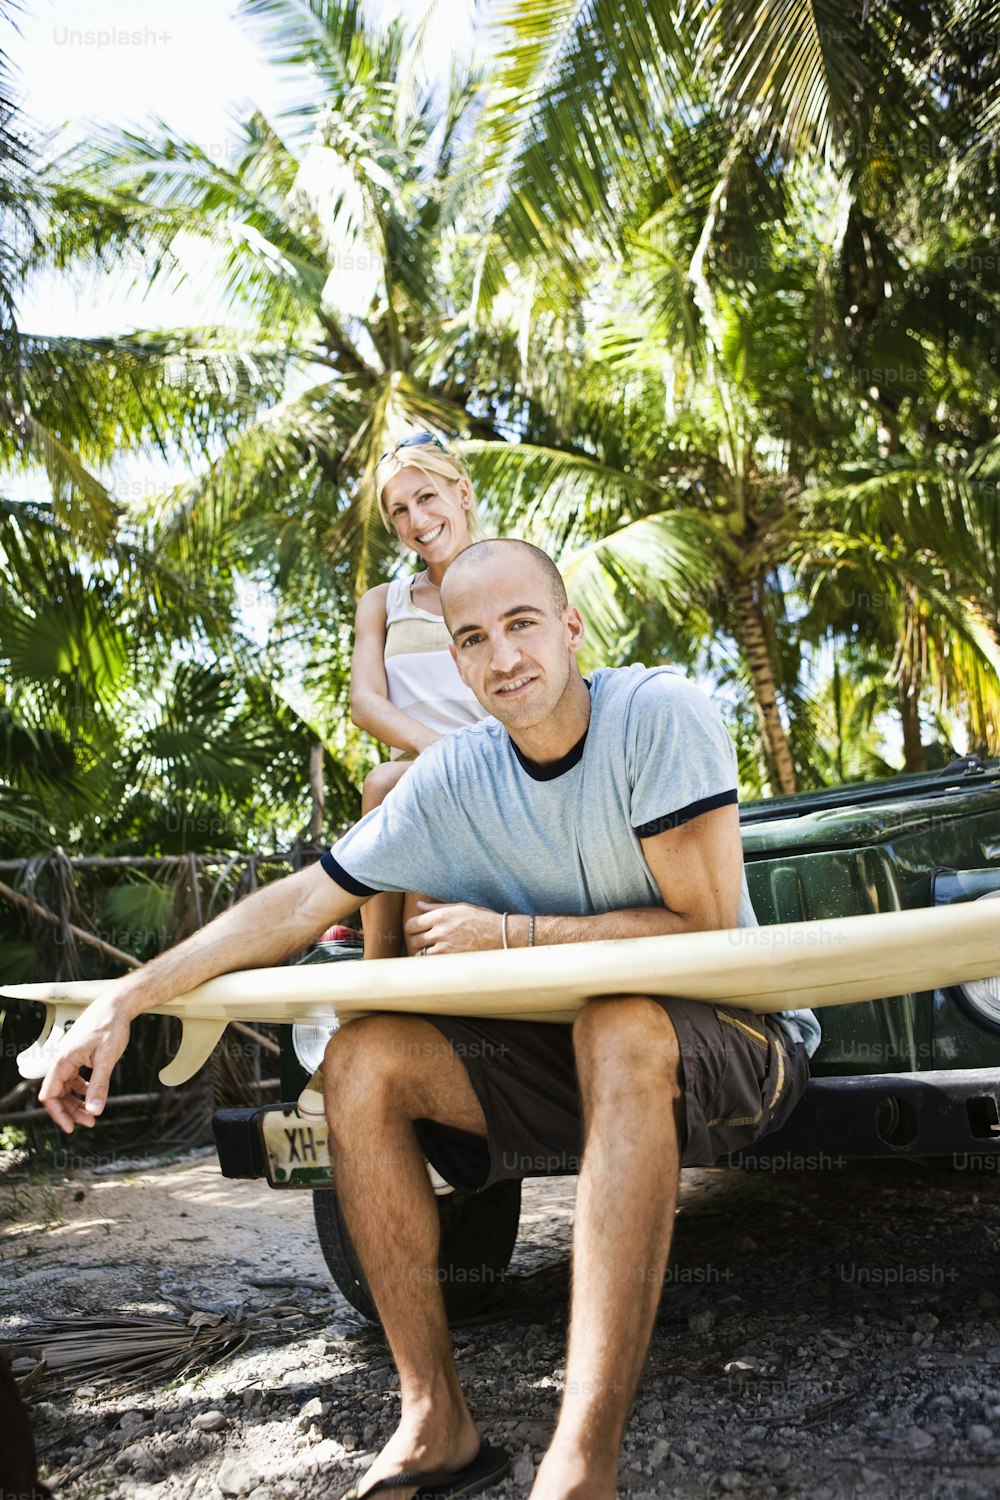 Un hombre sosteniendo una tabla de surf junto a una mujer